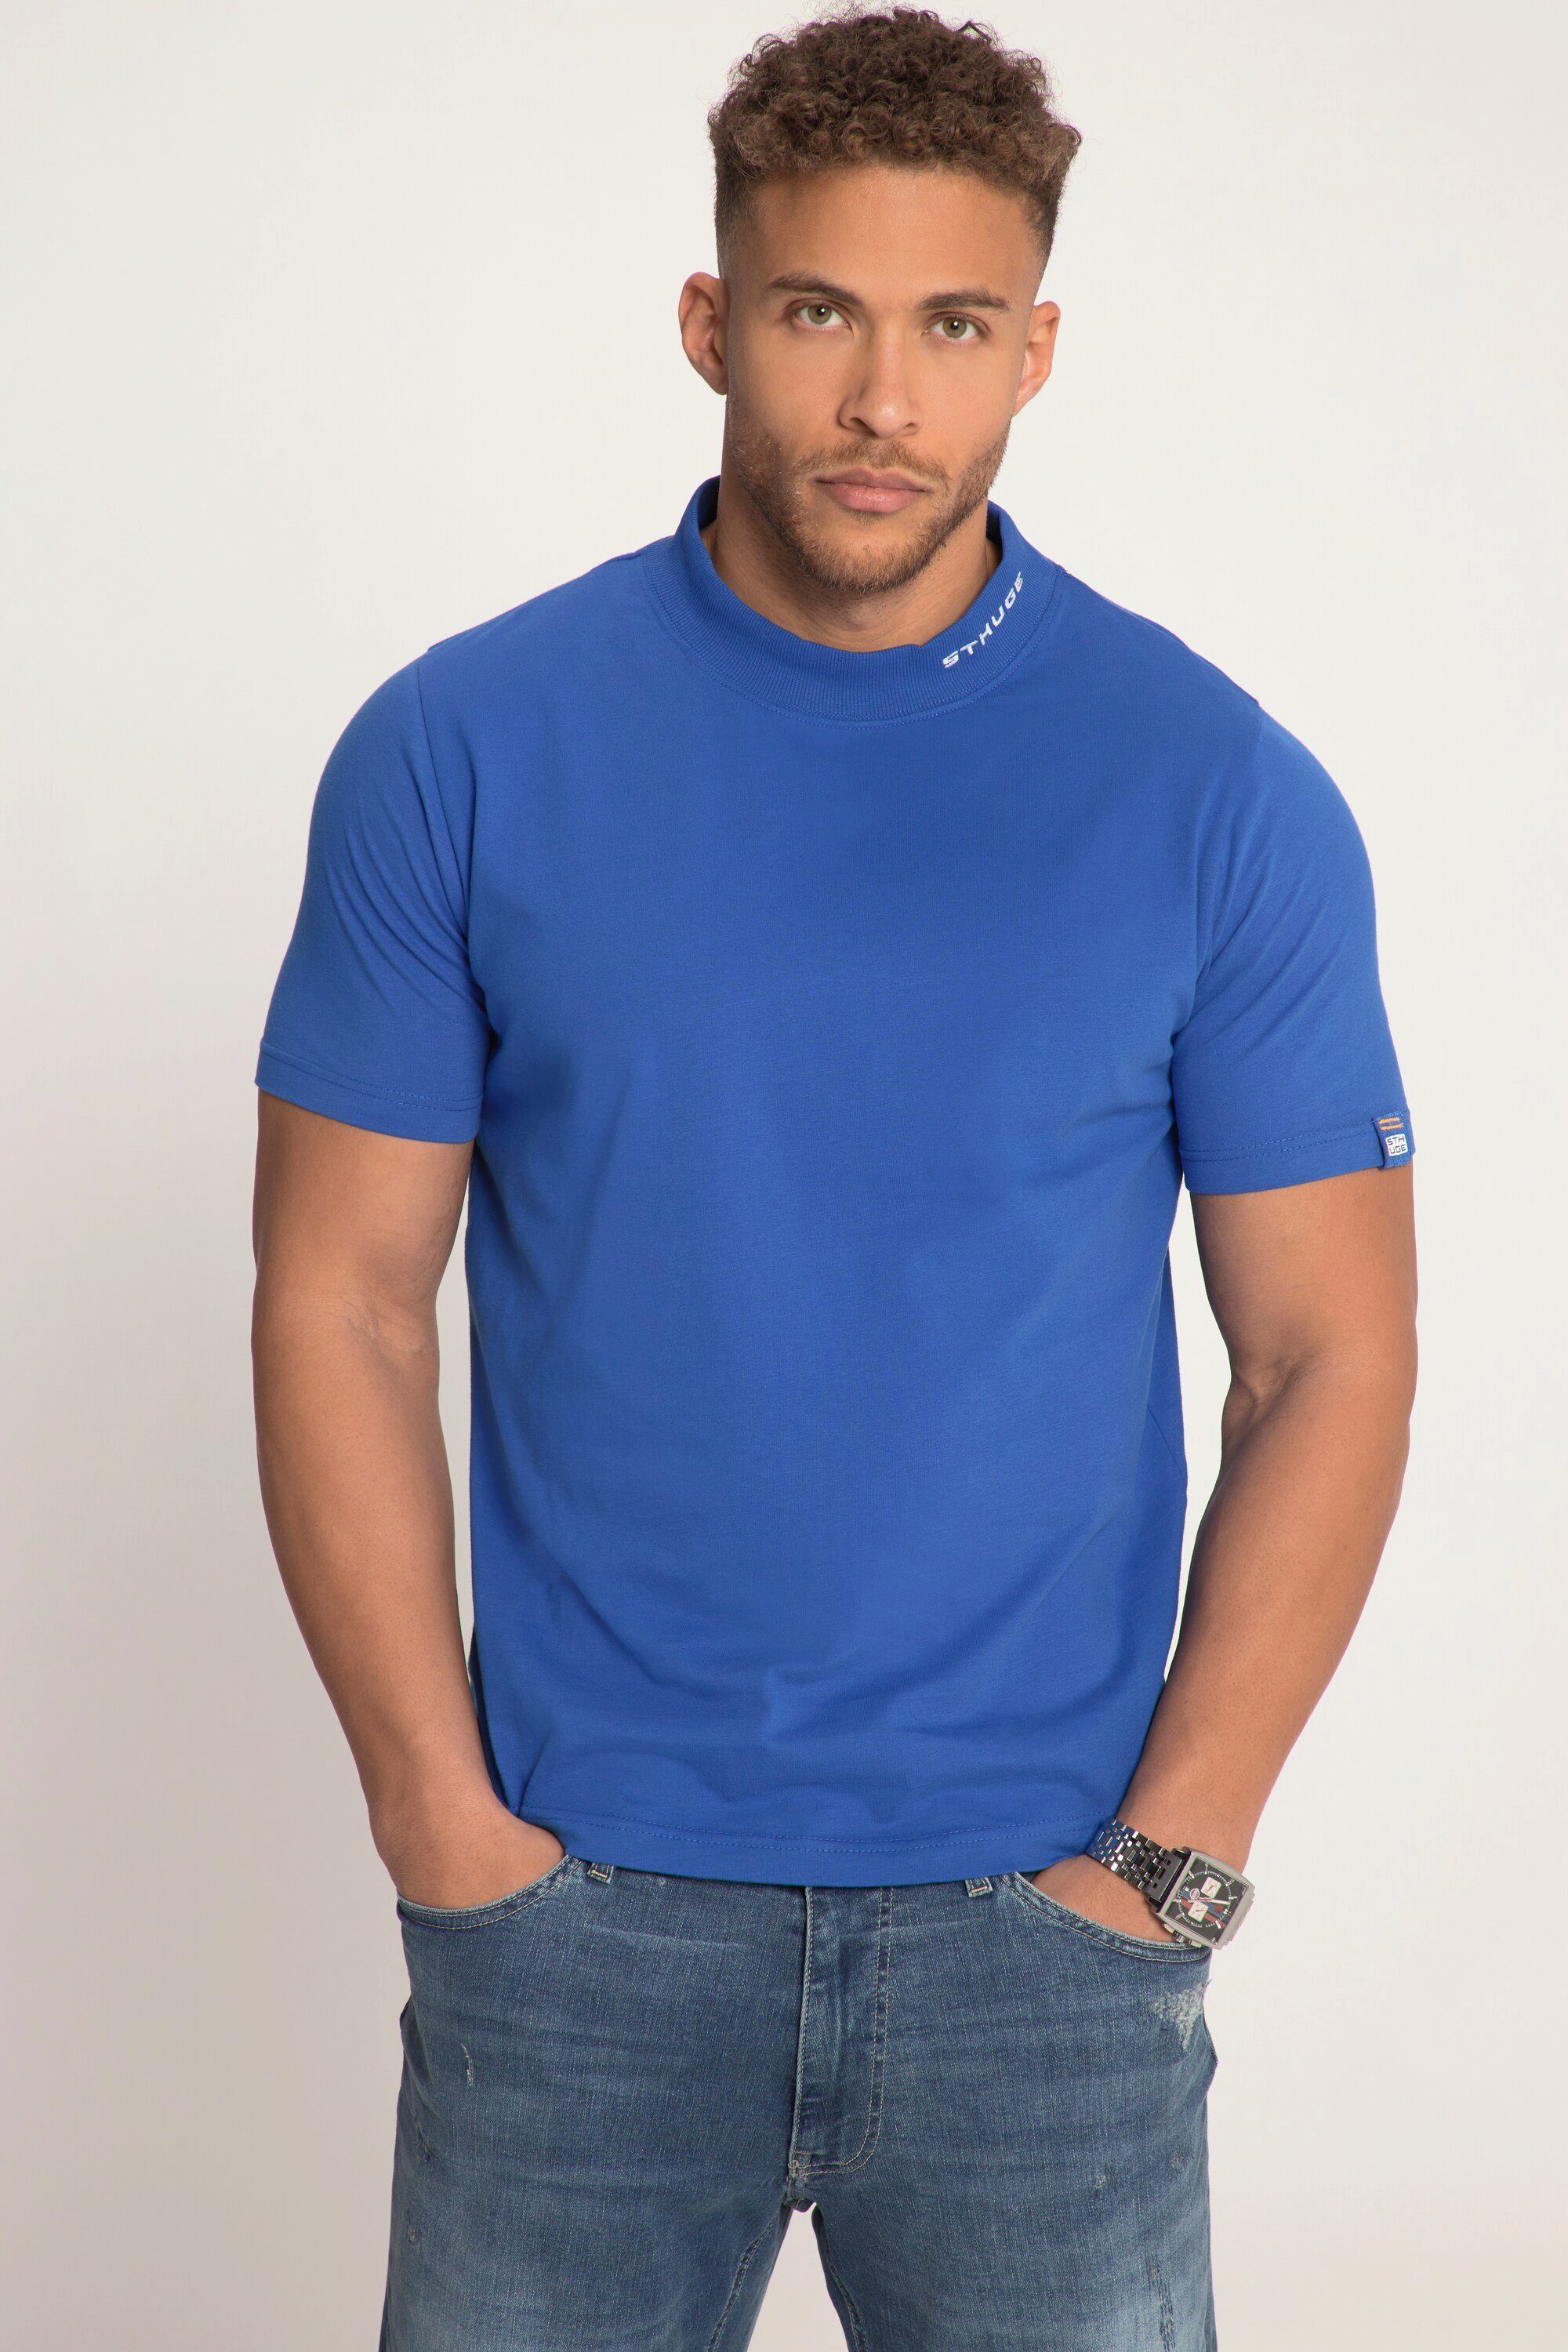 STHUGE T-Shirt STHUGE T-Shirt Halbarm Stehkragen bis 8 XL blau